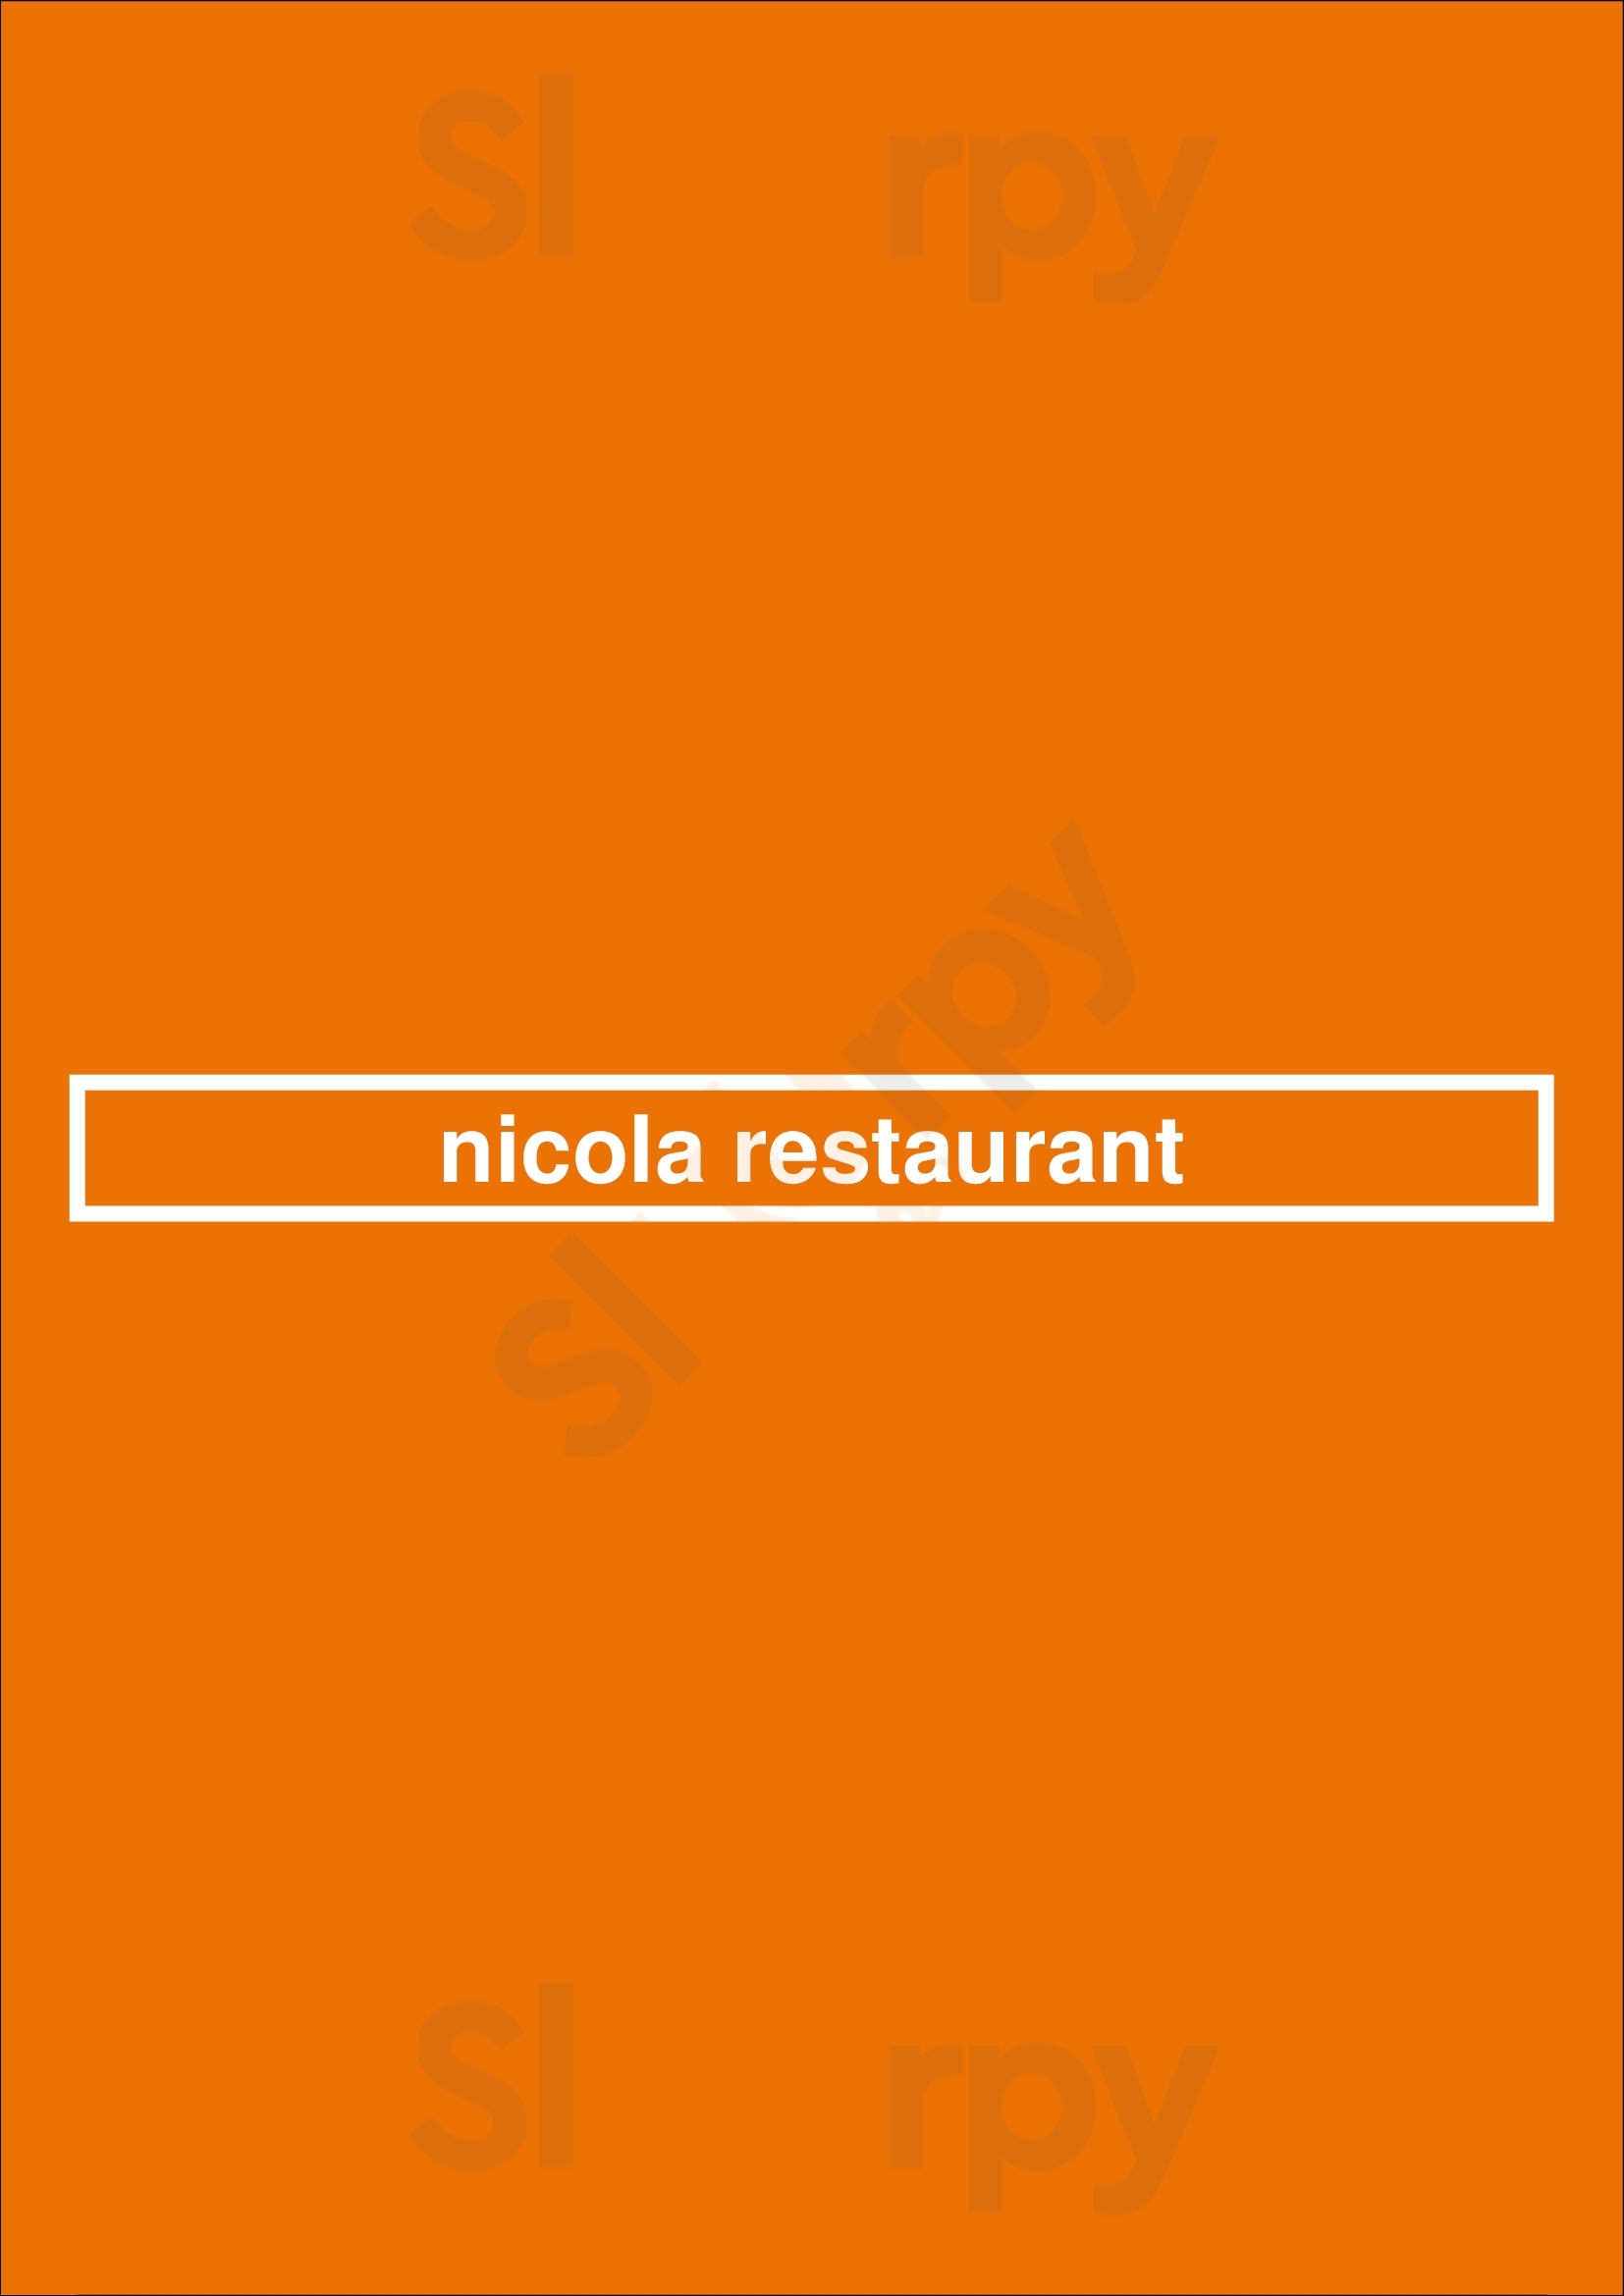 Nicola Restaurant Columbus Menu - 1